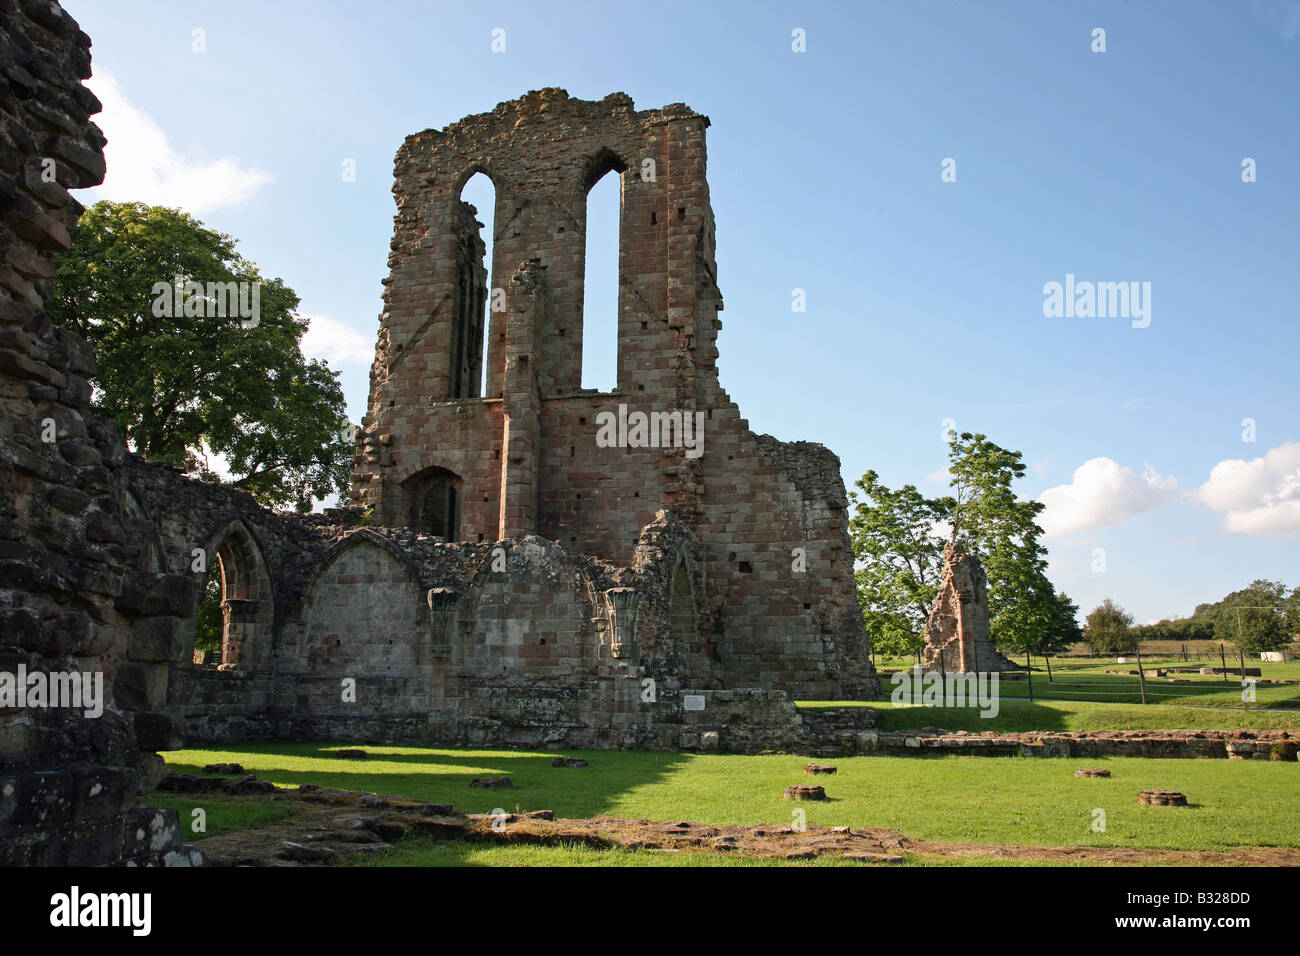 L'inglese del sito del patrimonio delle rovine di Croxden Abbey a Croxden tra Cheadle e Uttoxeter Staffordshire Foto Stock